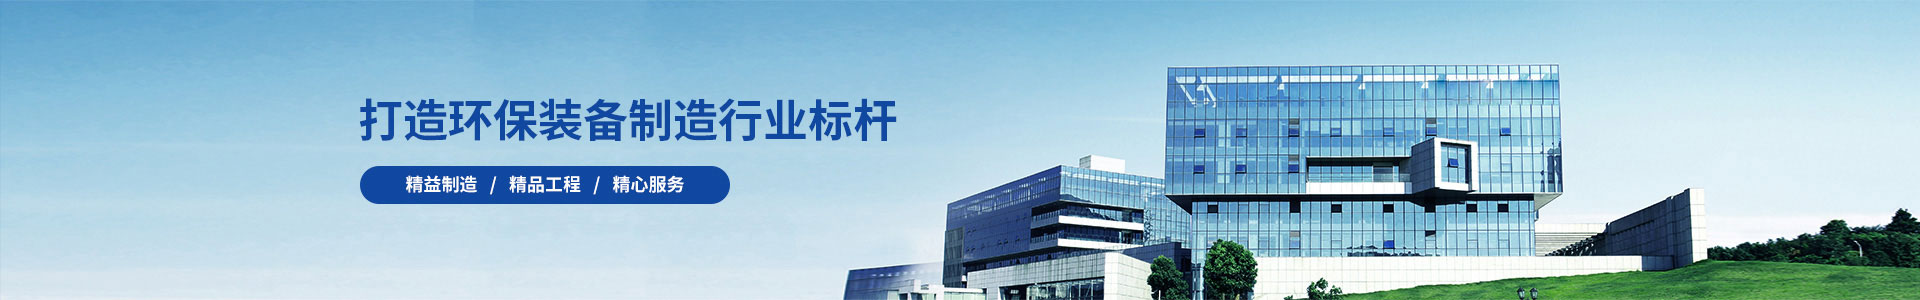 工程案例-广州锦如广告有限公司